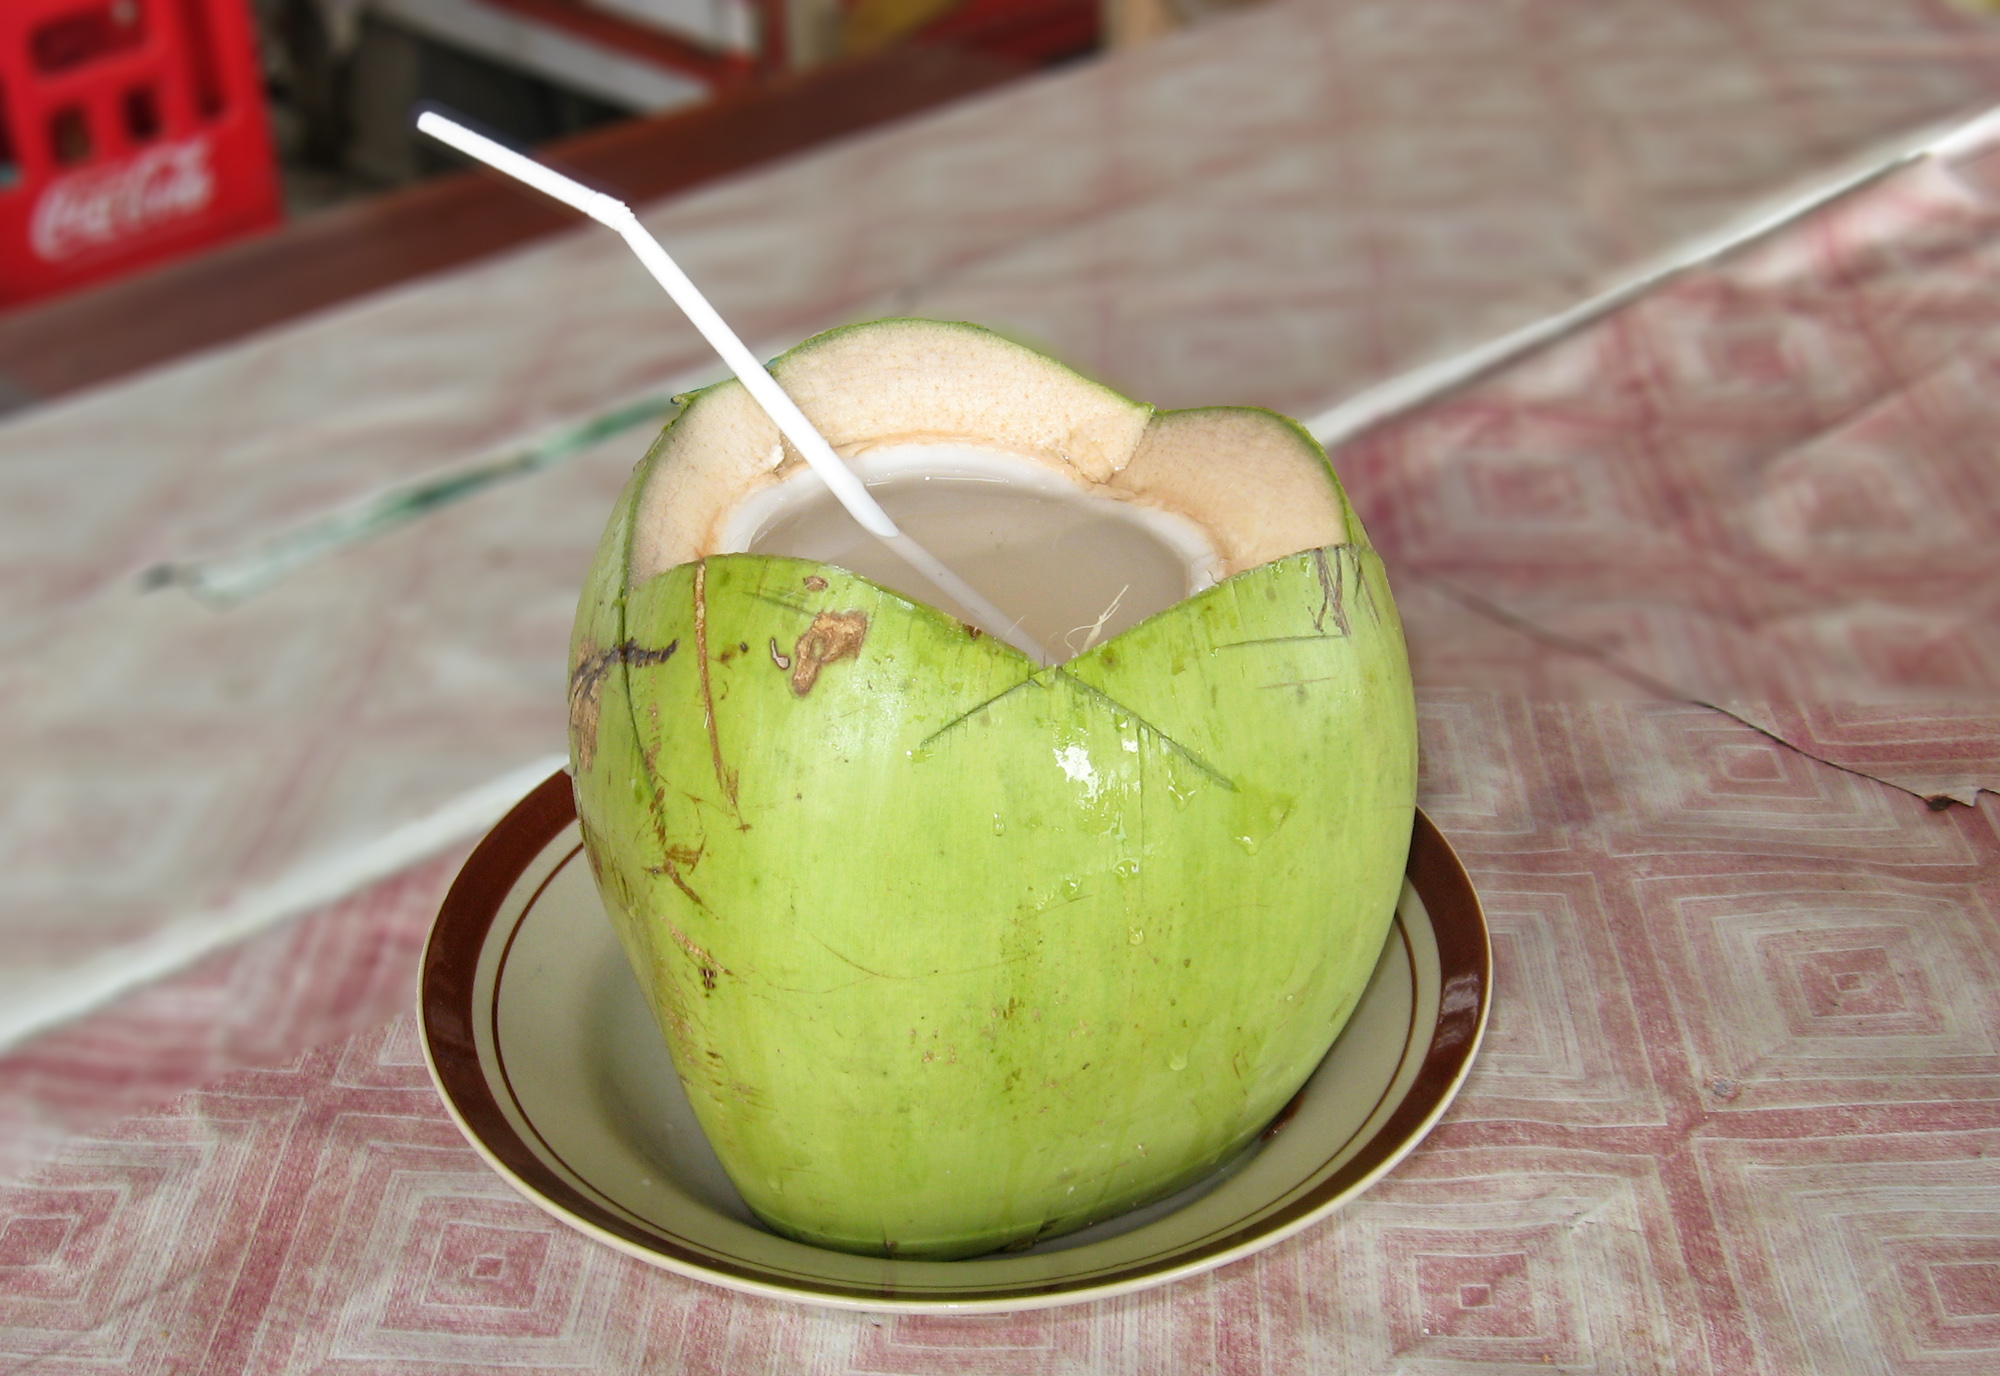 क्या ज्यादा नारियल पानी पीना आपके लिए हानिकारक है, यहां जानिए विशेषज्ञ क्या कहते हैं